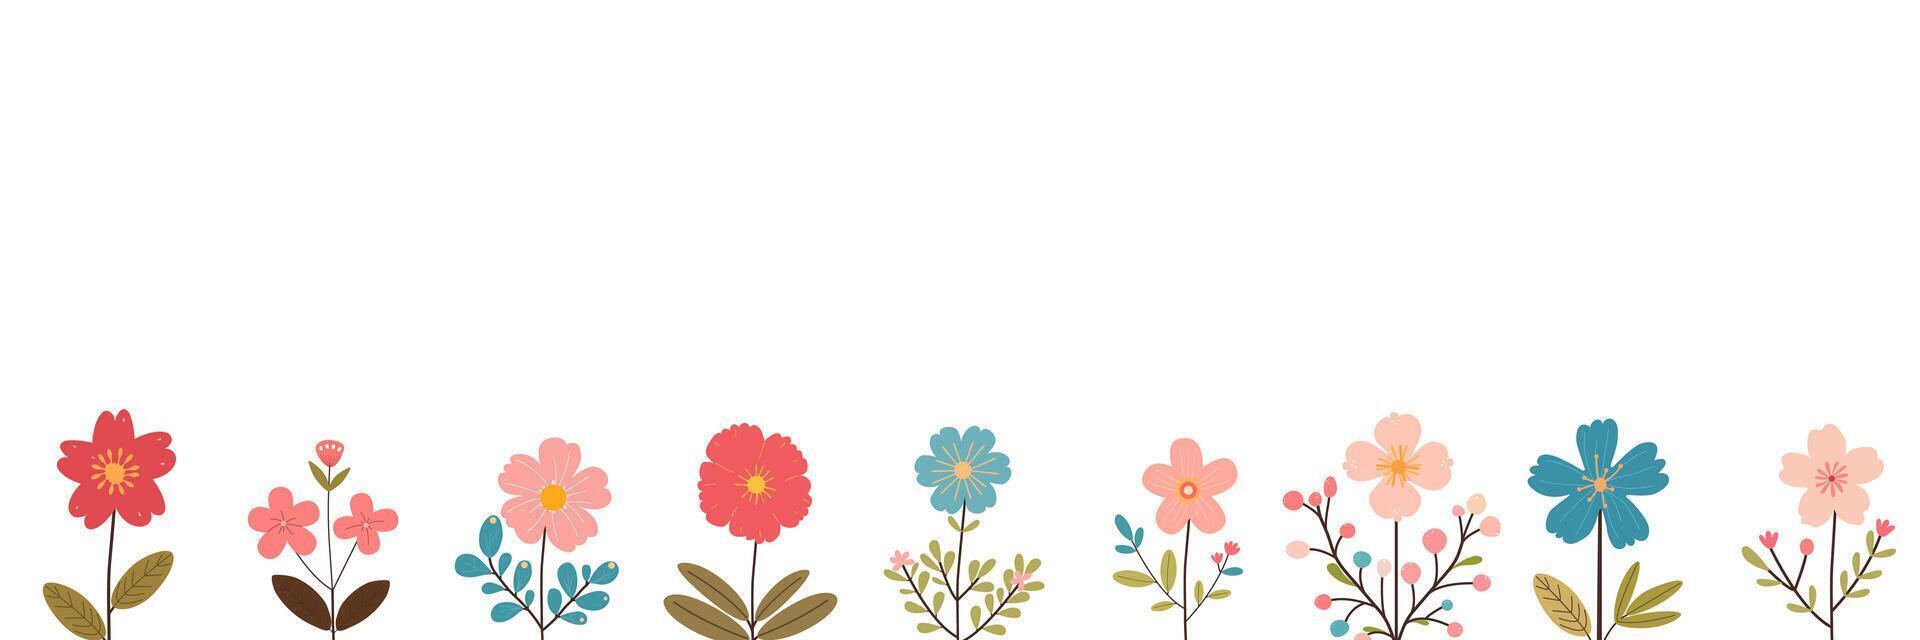 planta composición con texto espacio, hermosa floral marco. mano dibujado flores bandera. mano dibujado plano estilo vistoso vector ilustración.